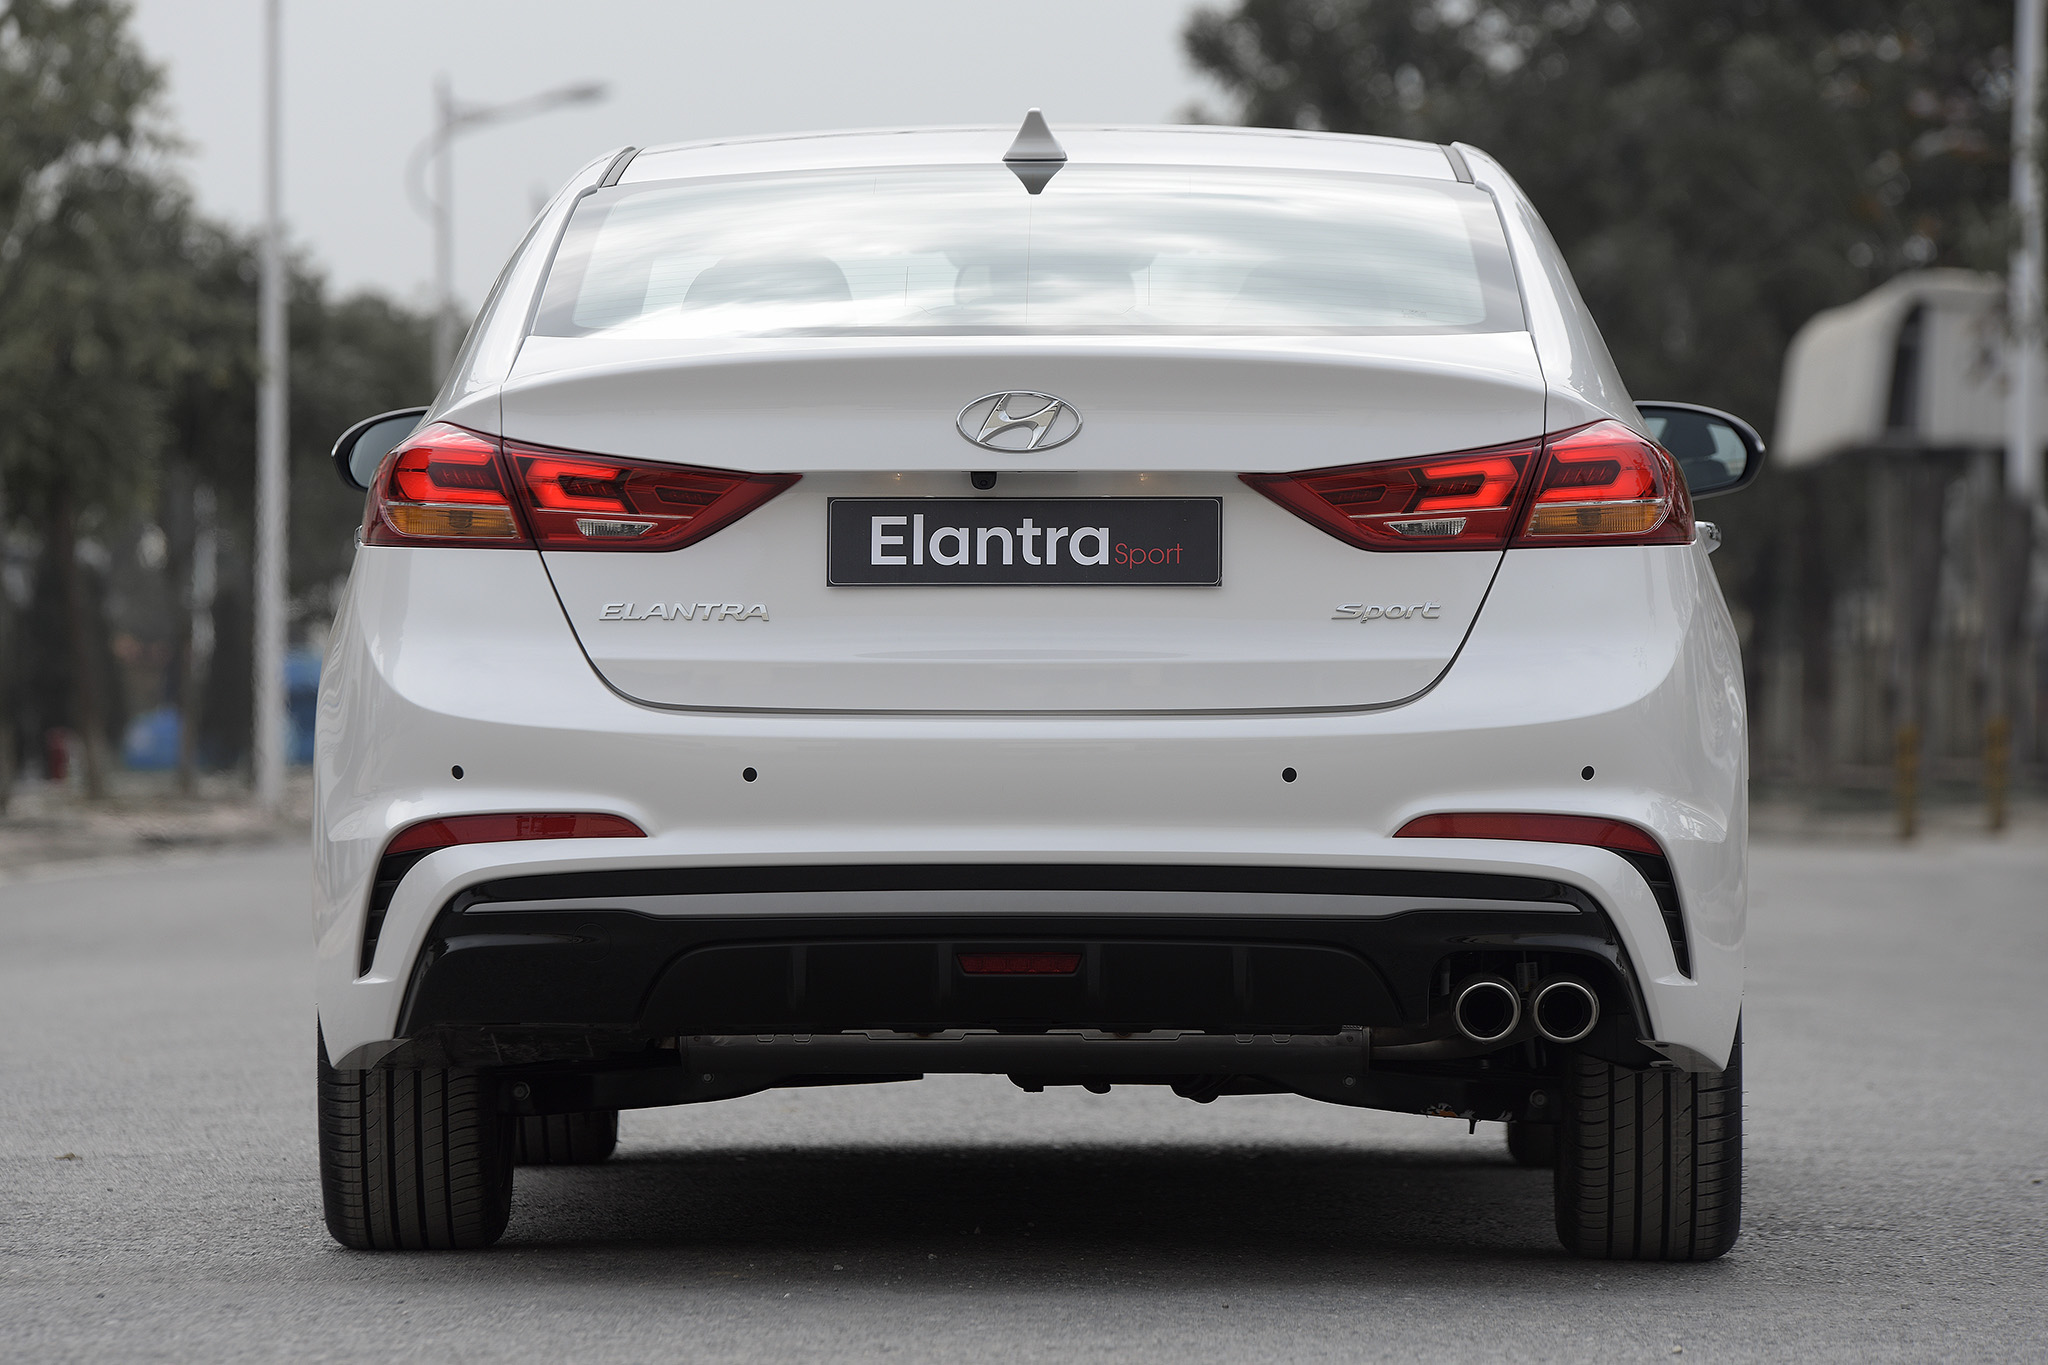 Mua bán rao vặt: Hyundai Vinh chính thức giới thiệu mẫu xe Hyundai Elantra Sport  Hyundai-elantra-sport-2